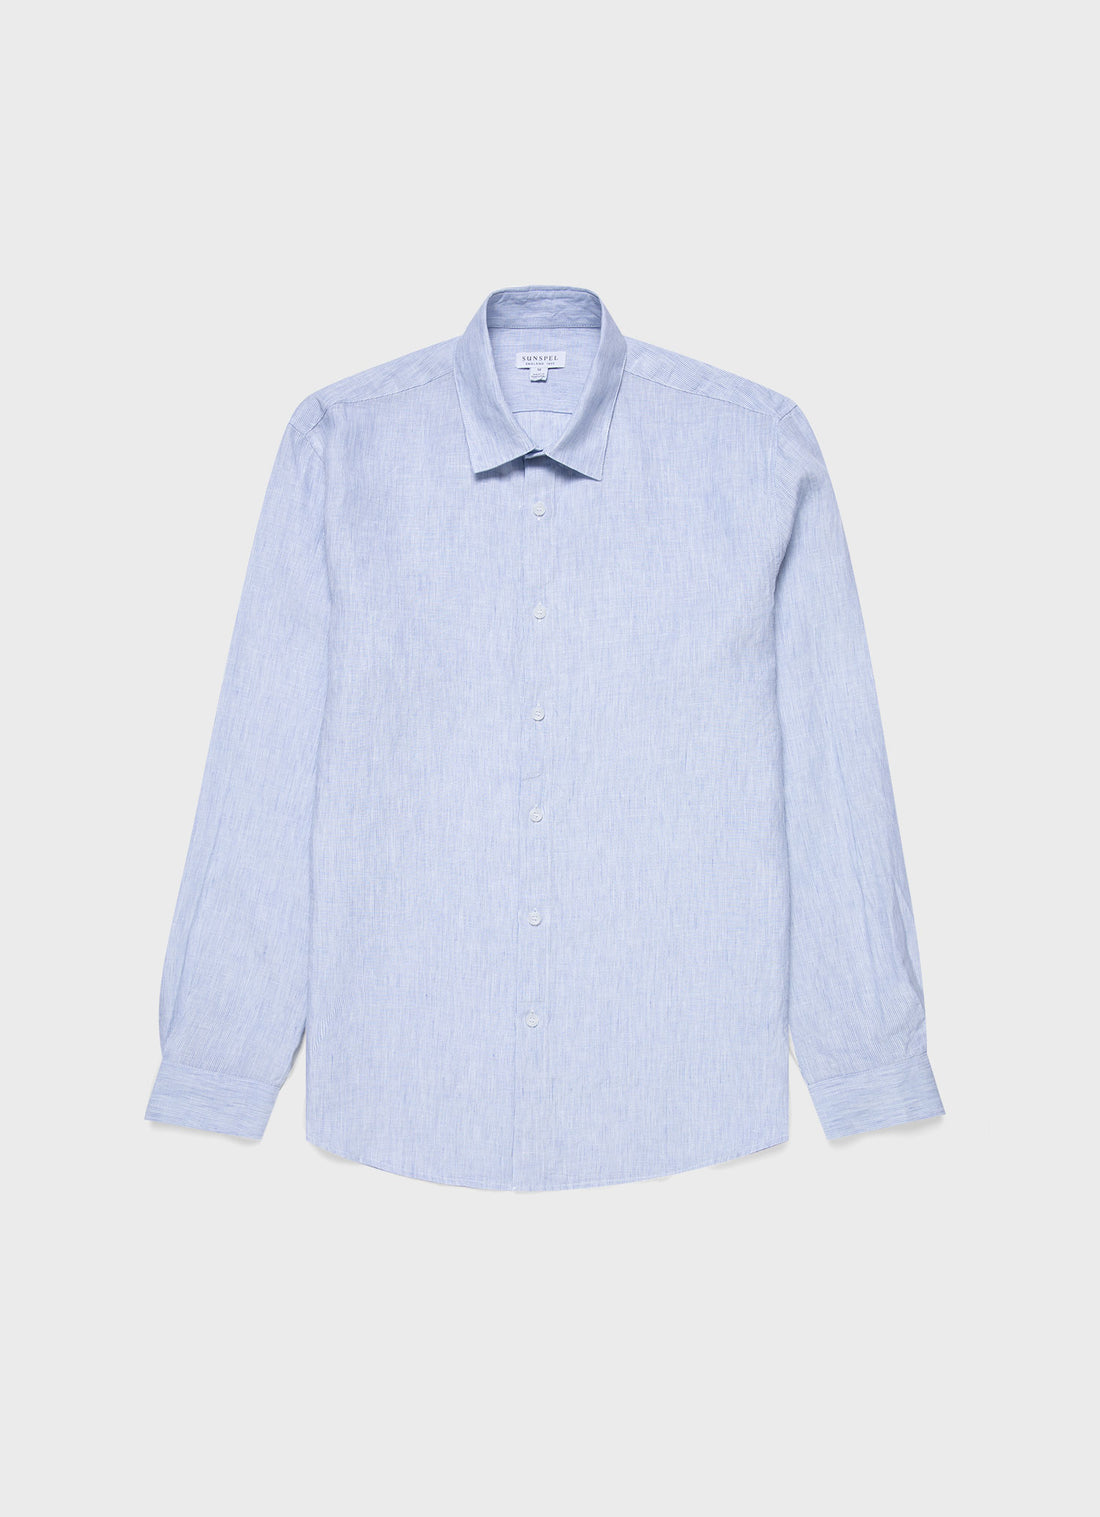 Men's Linen Shirt in Blue/White